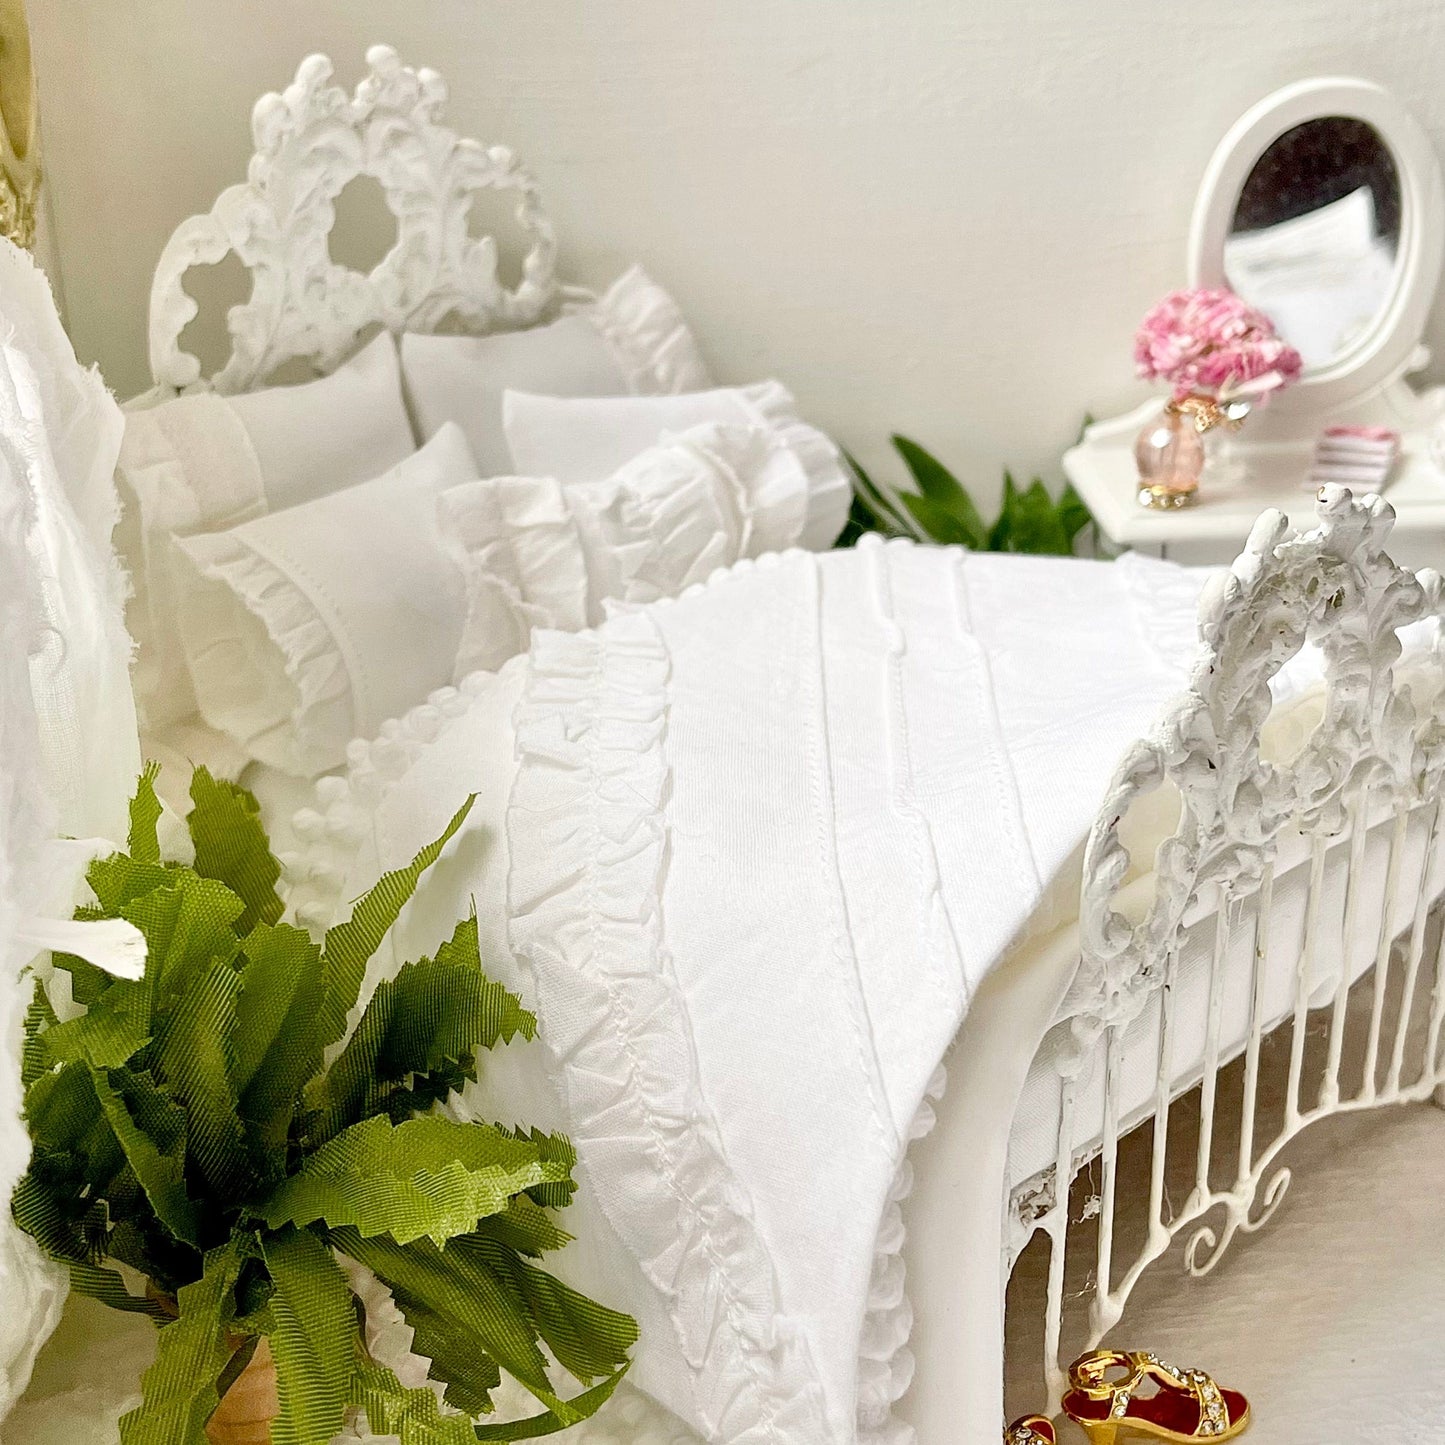 Chantallena White Bed Linens double Boundless White | Eight Piece White Cotton with White Ruffles and Pintucks Bedding Set | Ciara